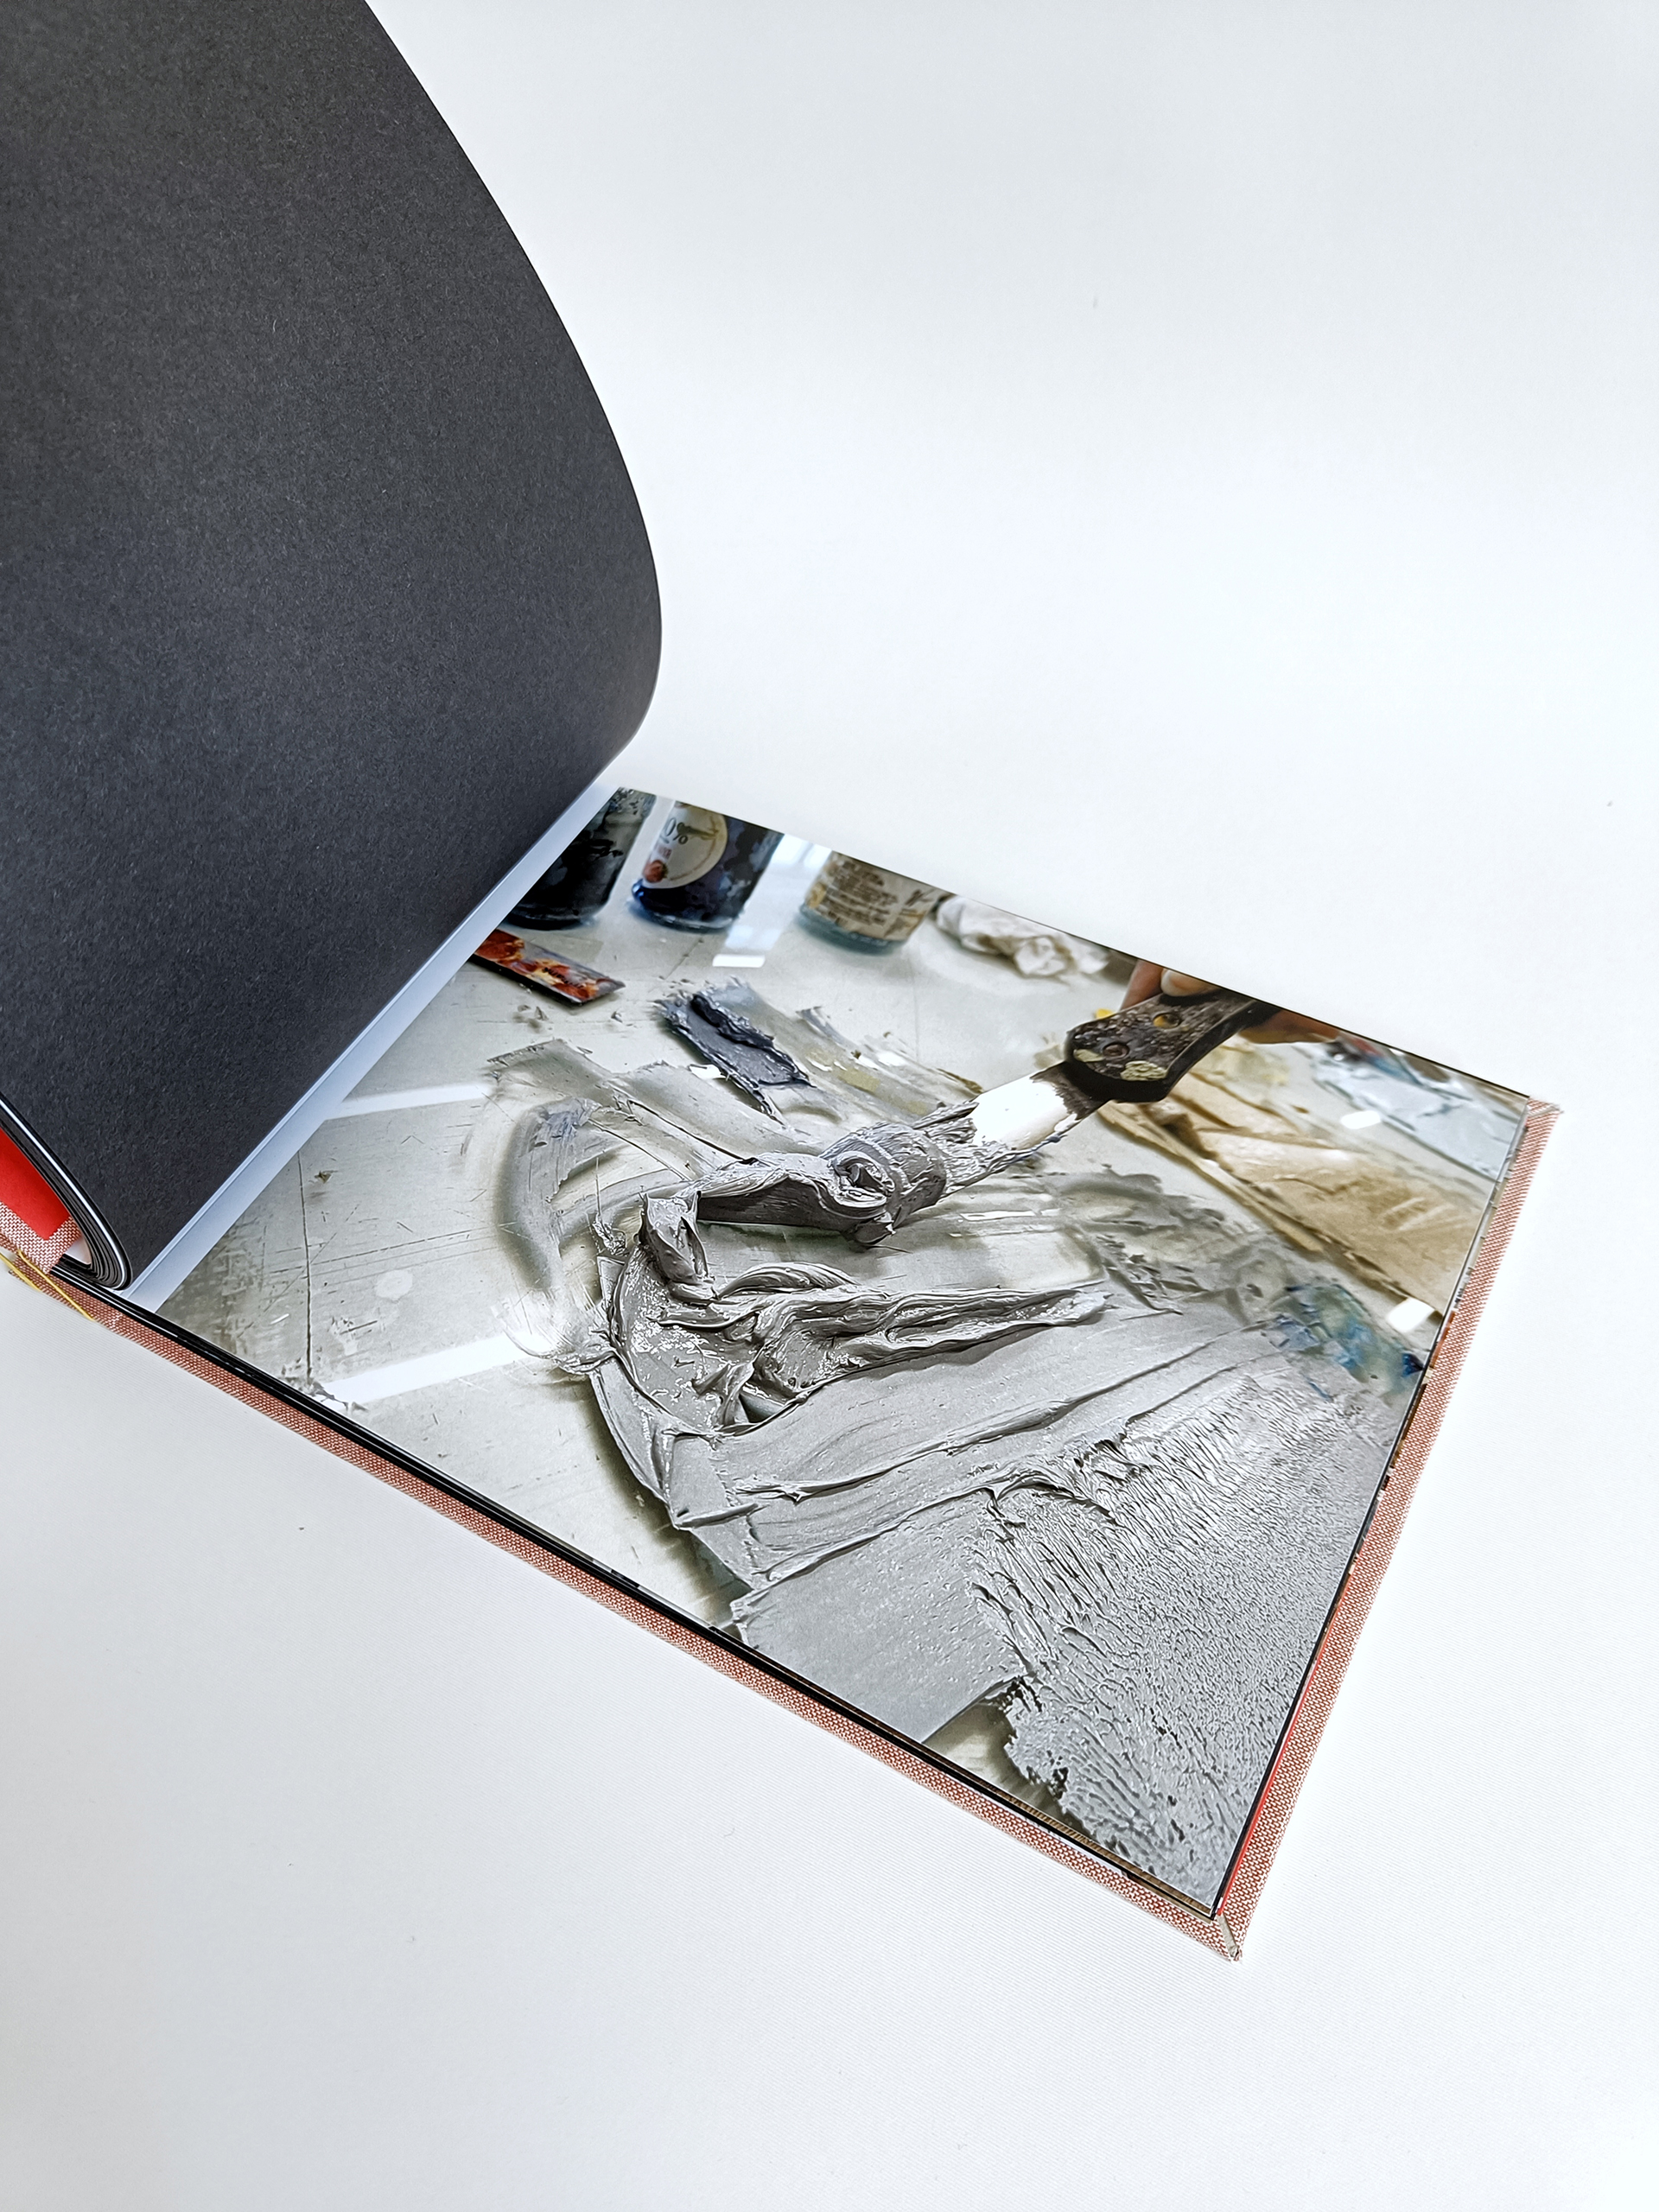 Fotografia przedstawia otwarte Portfolio w formie albumu, widoczna zdjęcie z pracowni pokazujące zbliżenie na szarą farbę drukarską.